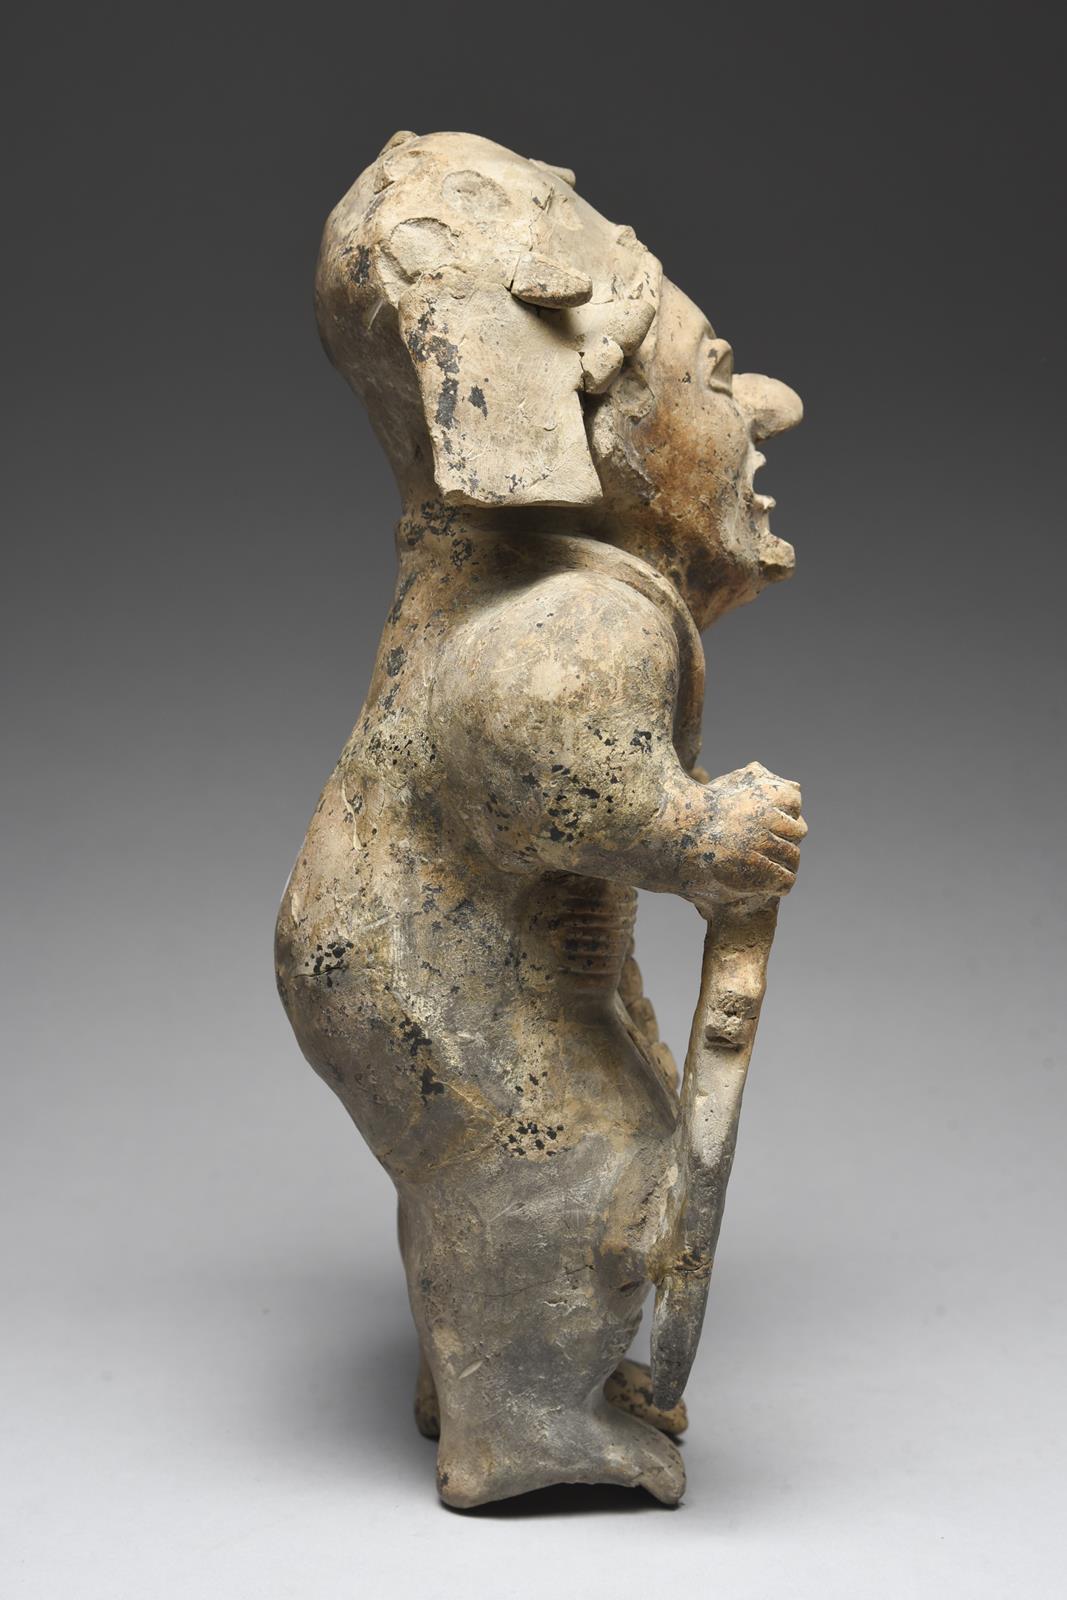 A Jama Coaque standing warrior Ecuador, circa 500 BC - 600 AD pottery, wearing a headdress, necklace - Image 4 of 4